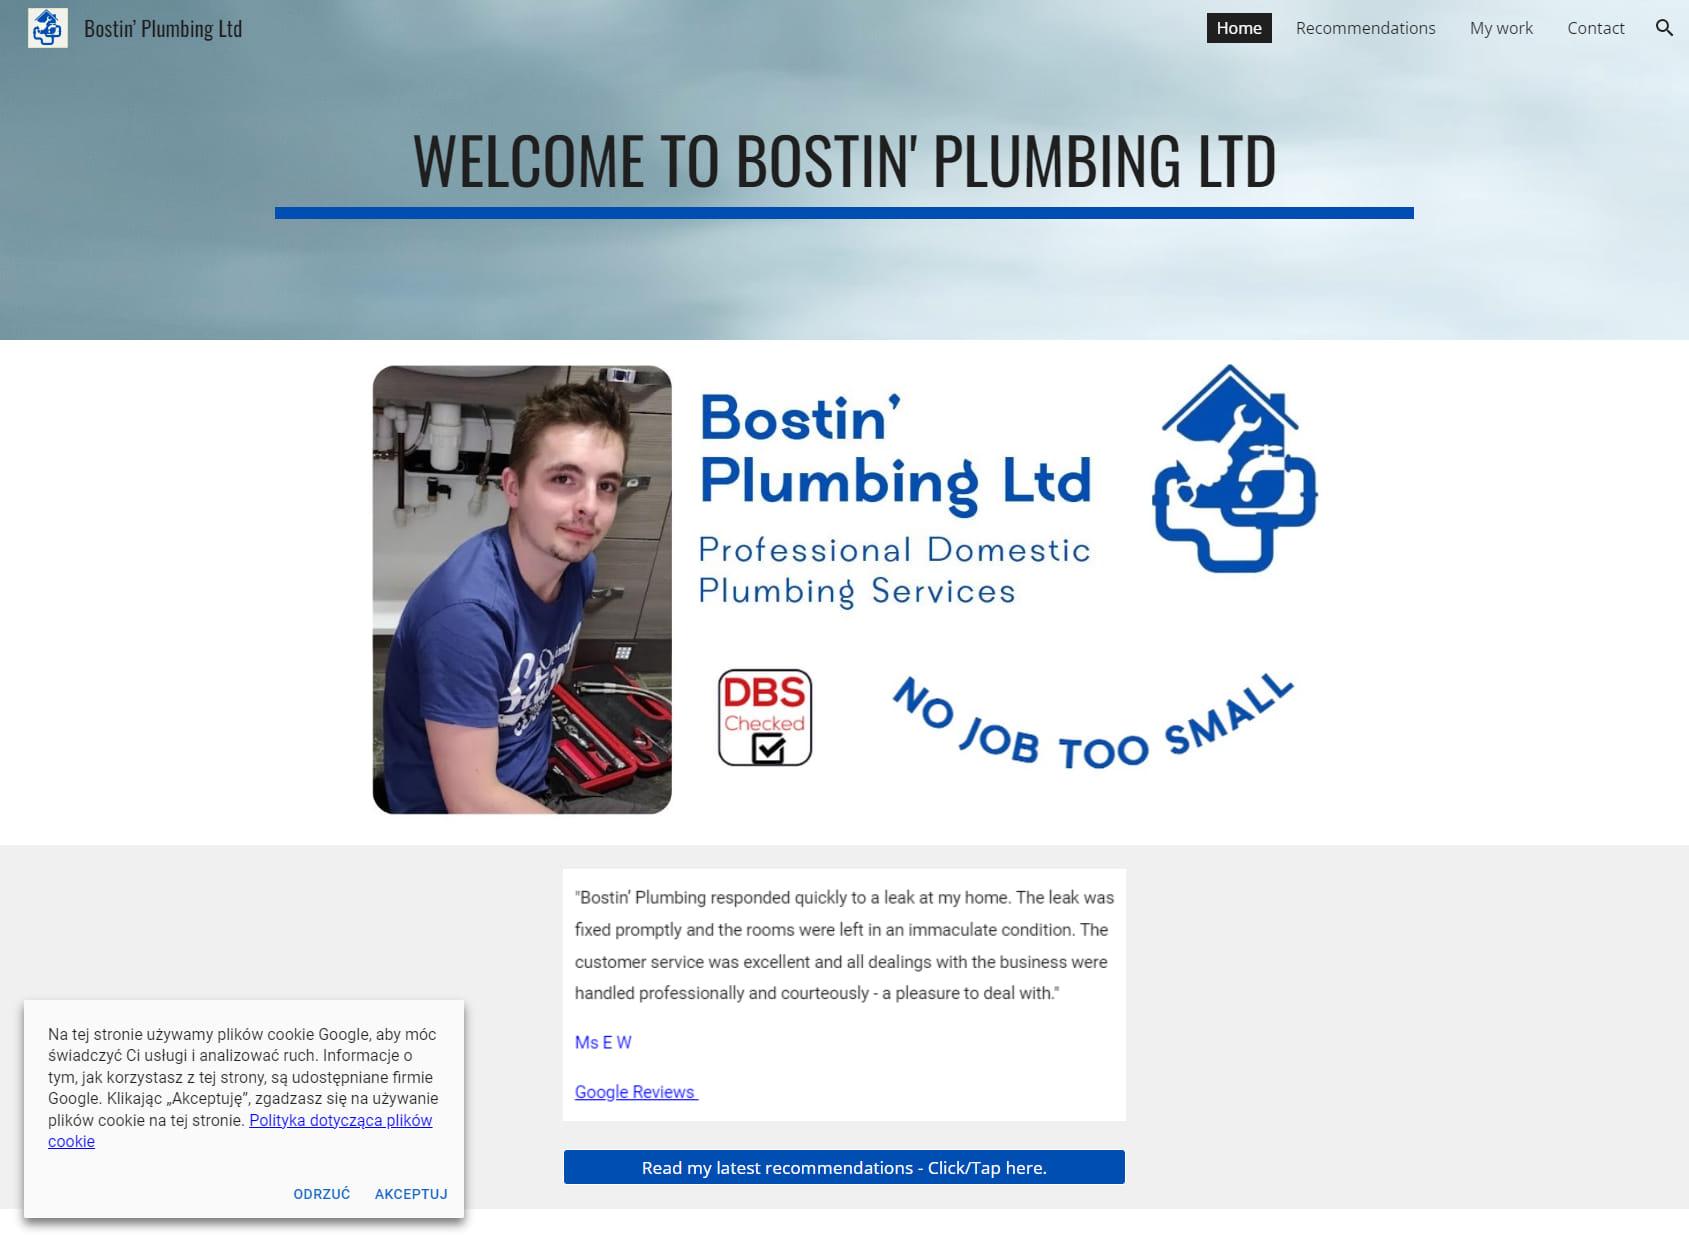 Bostin' Plumbing Ltd